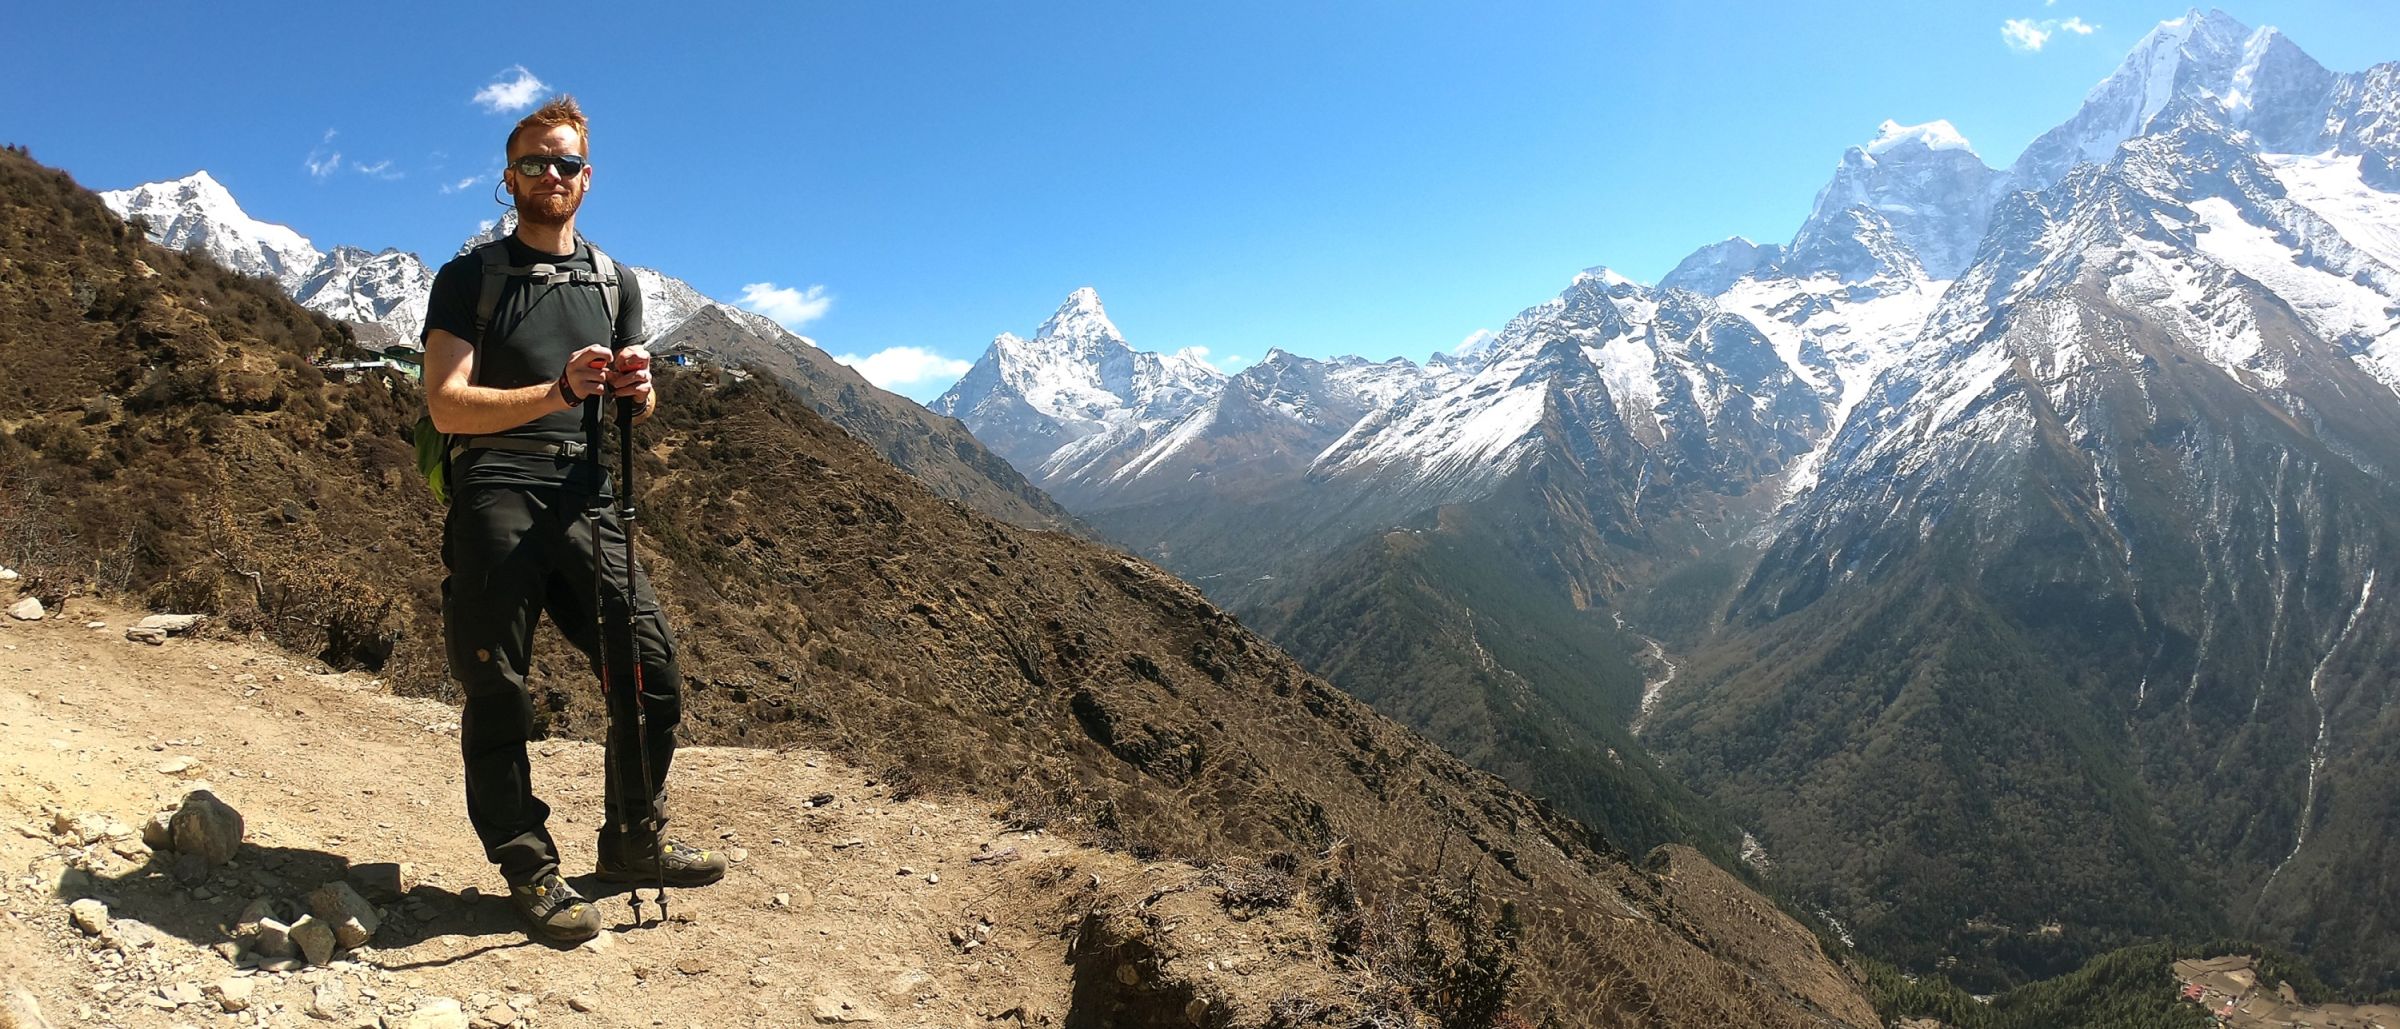 Trekkinggenuss pur inmitten der weißen Gipfelwelt des Solu Khumbu